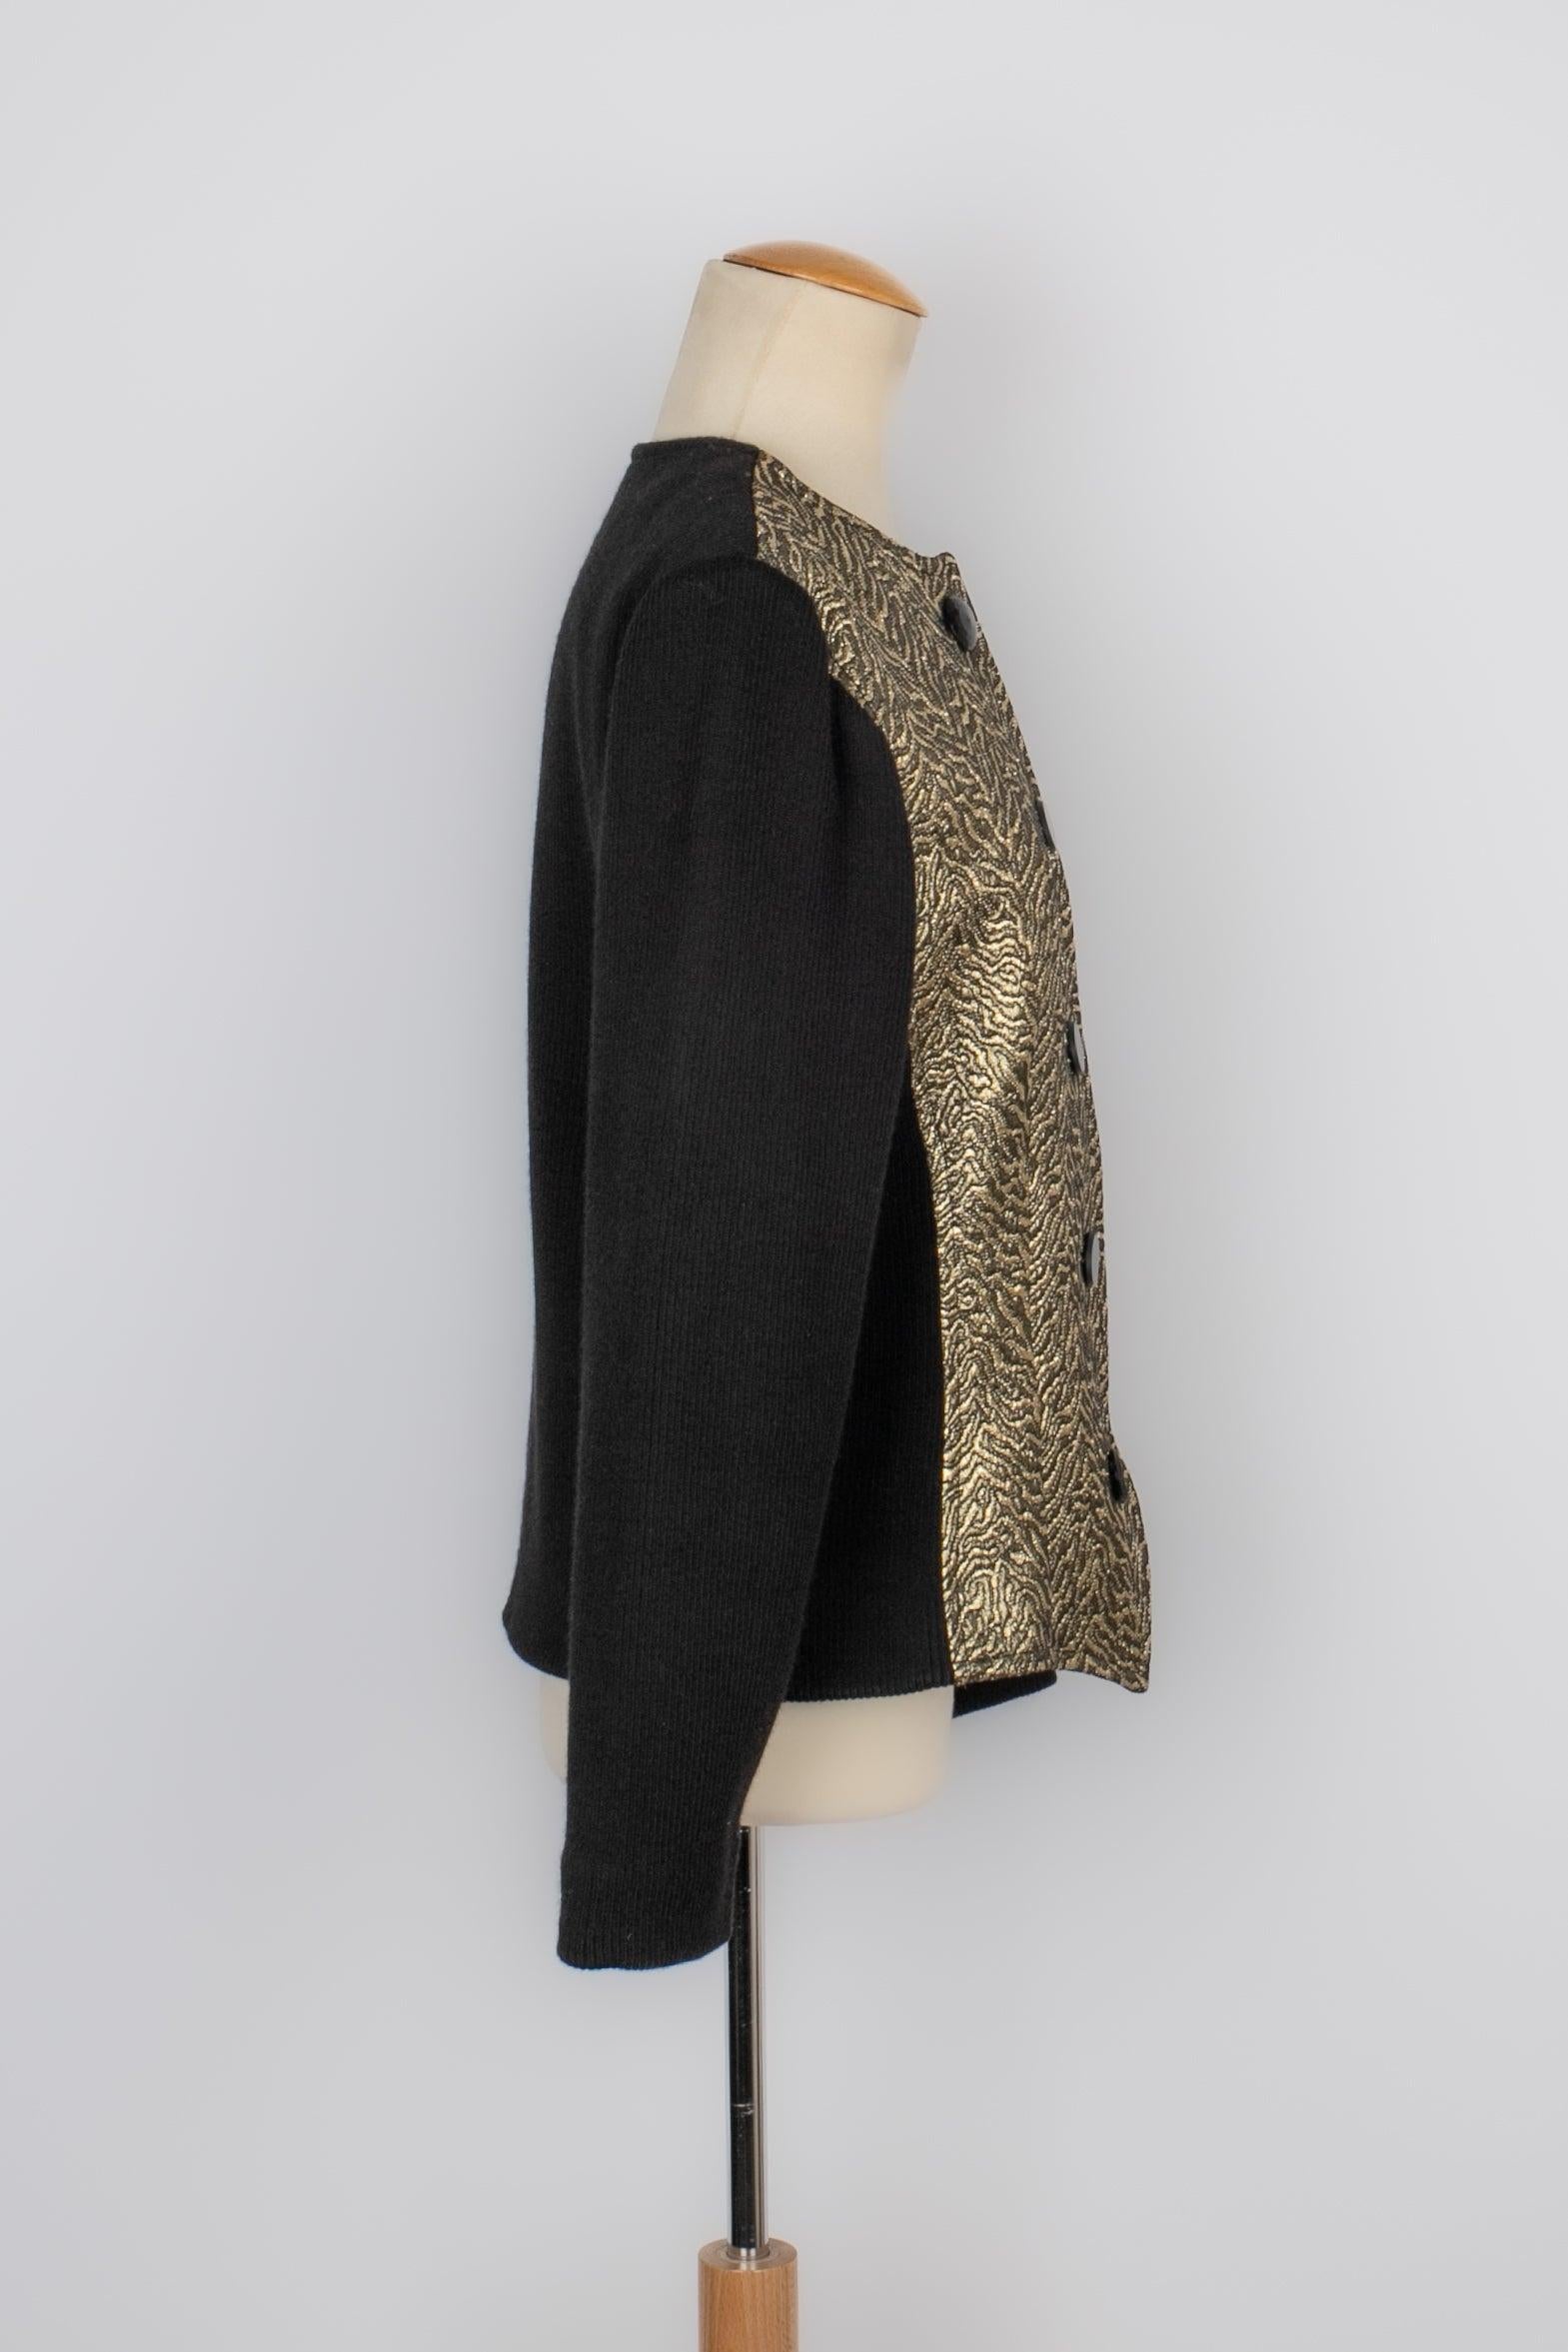 Yves Saint Laurent - (Fabriqué en France) Veste en laine noire et lurex doré datant des années 1980. Label de taille et de composition manquant, il convient à un 38FR. Collectional 1986.

Informations complémentaires :
Condit : Très bon